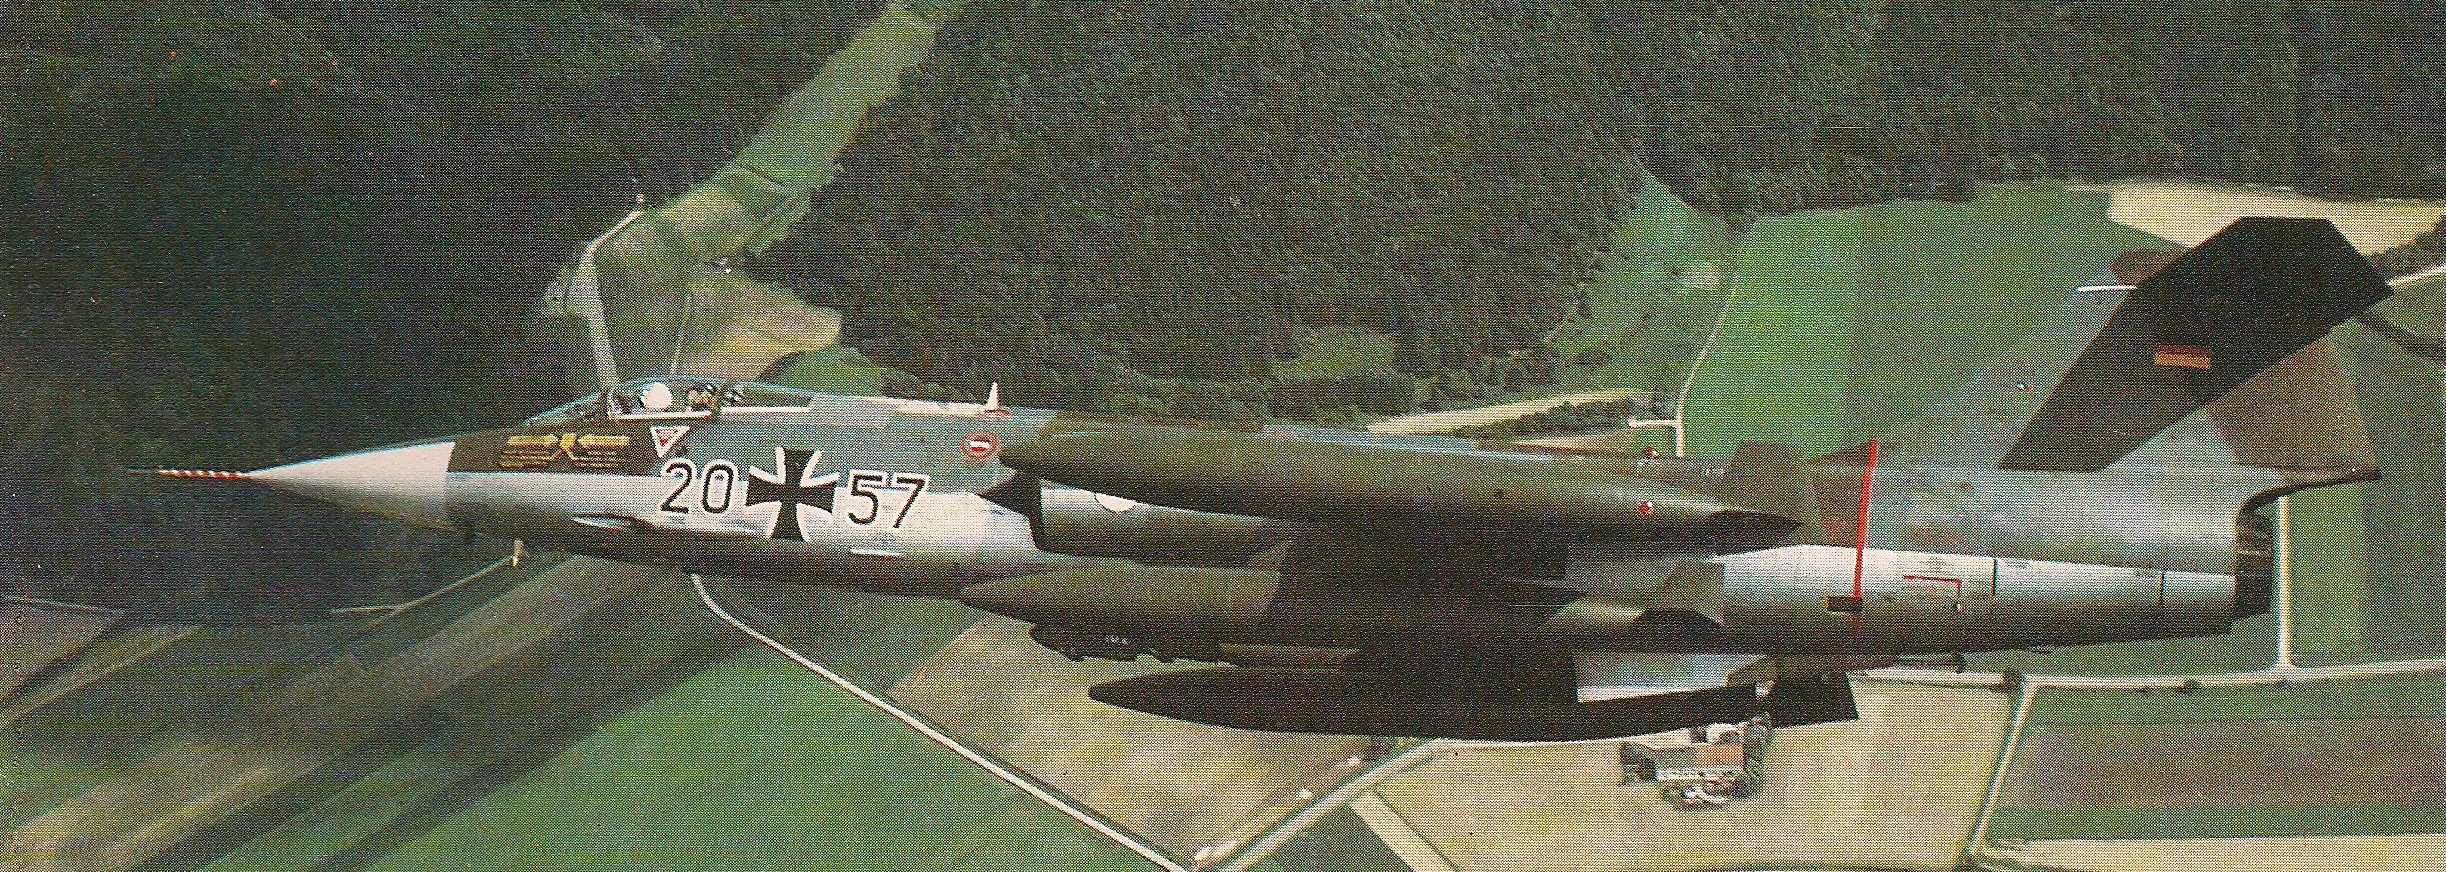 As linhas do Starfighter lhe valeram o apelido de "míssil com um homem dentro" está bem evidente. O desempenho do F-104 na Luftwaffe, porém, valeu-lhe uma fama negativa, devido à alta taxa de acidentes.